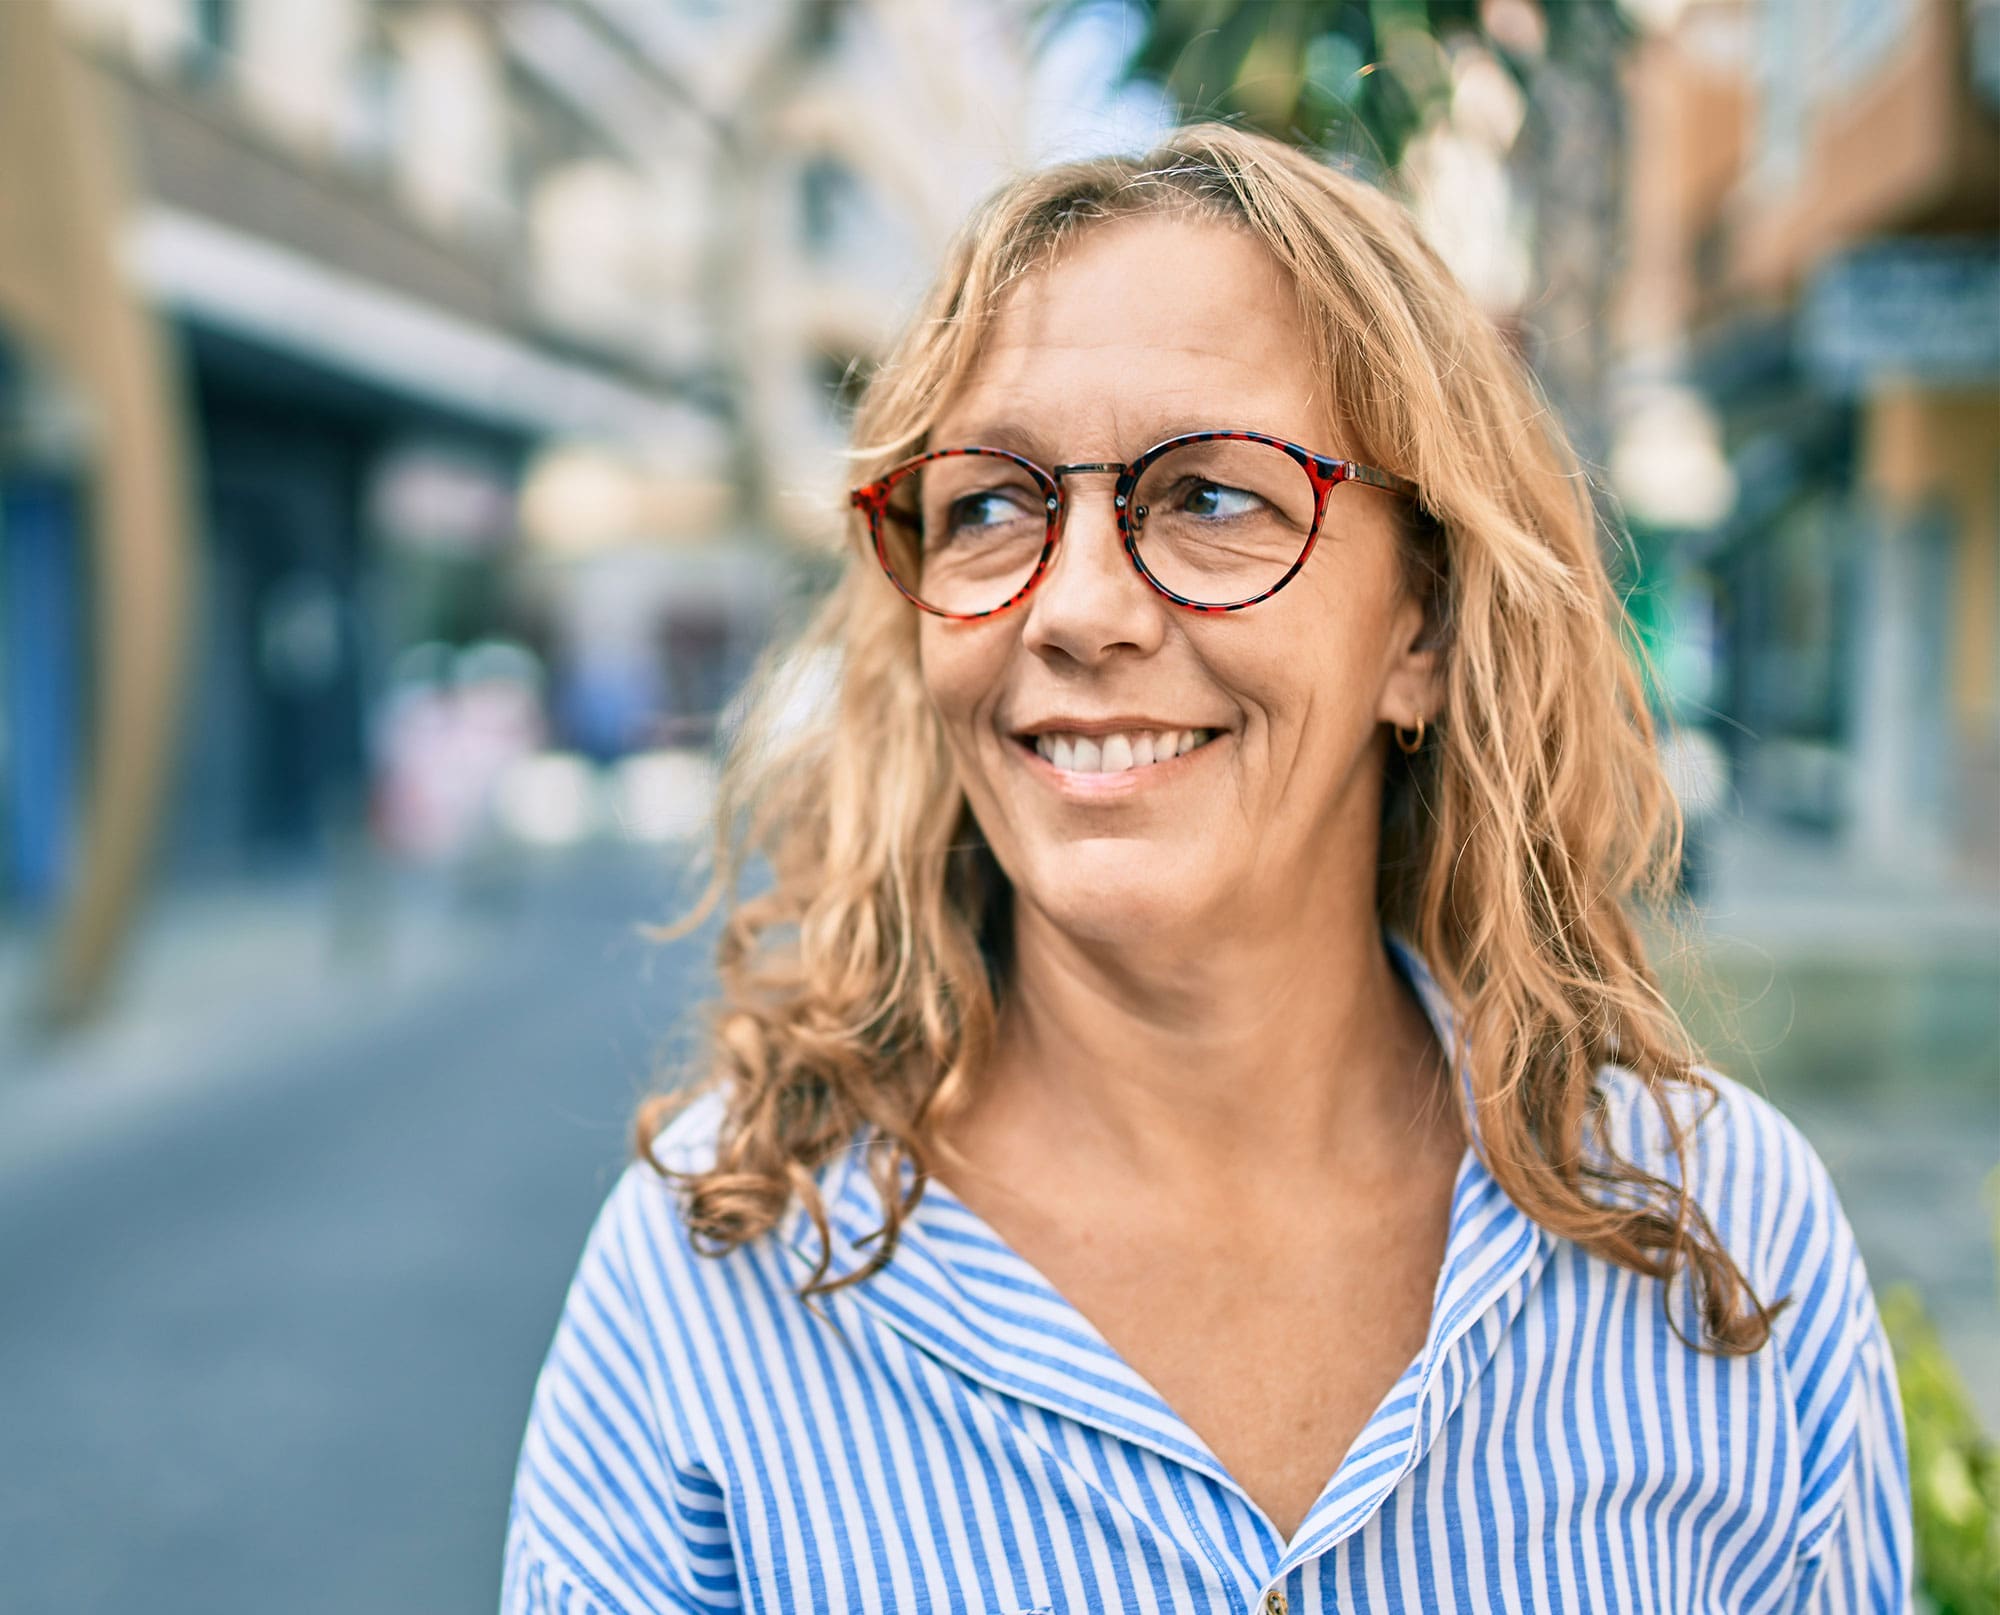 Frau mit brünetten Haaren, gestreifter Bluse und Brille lächelt und sieht nach links – im Hintergrund sieht man städtisches Ambiente